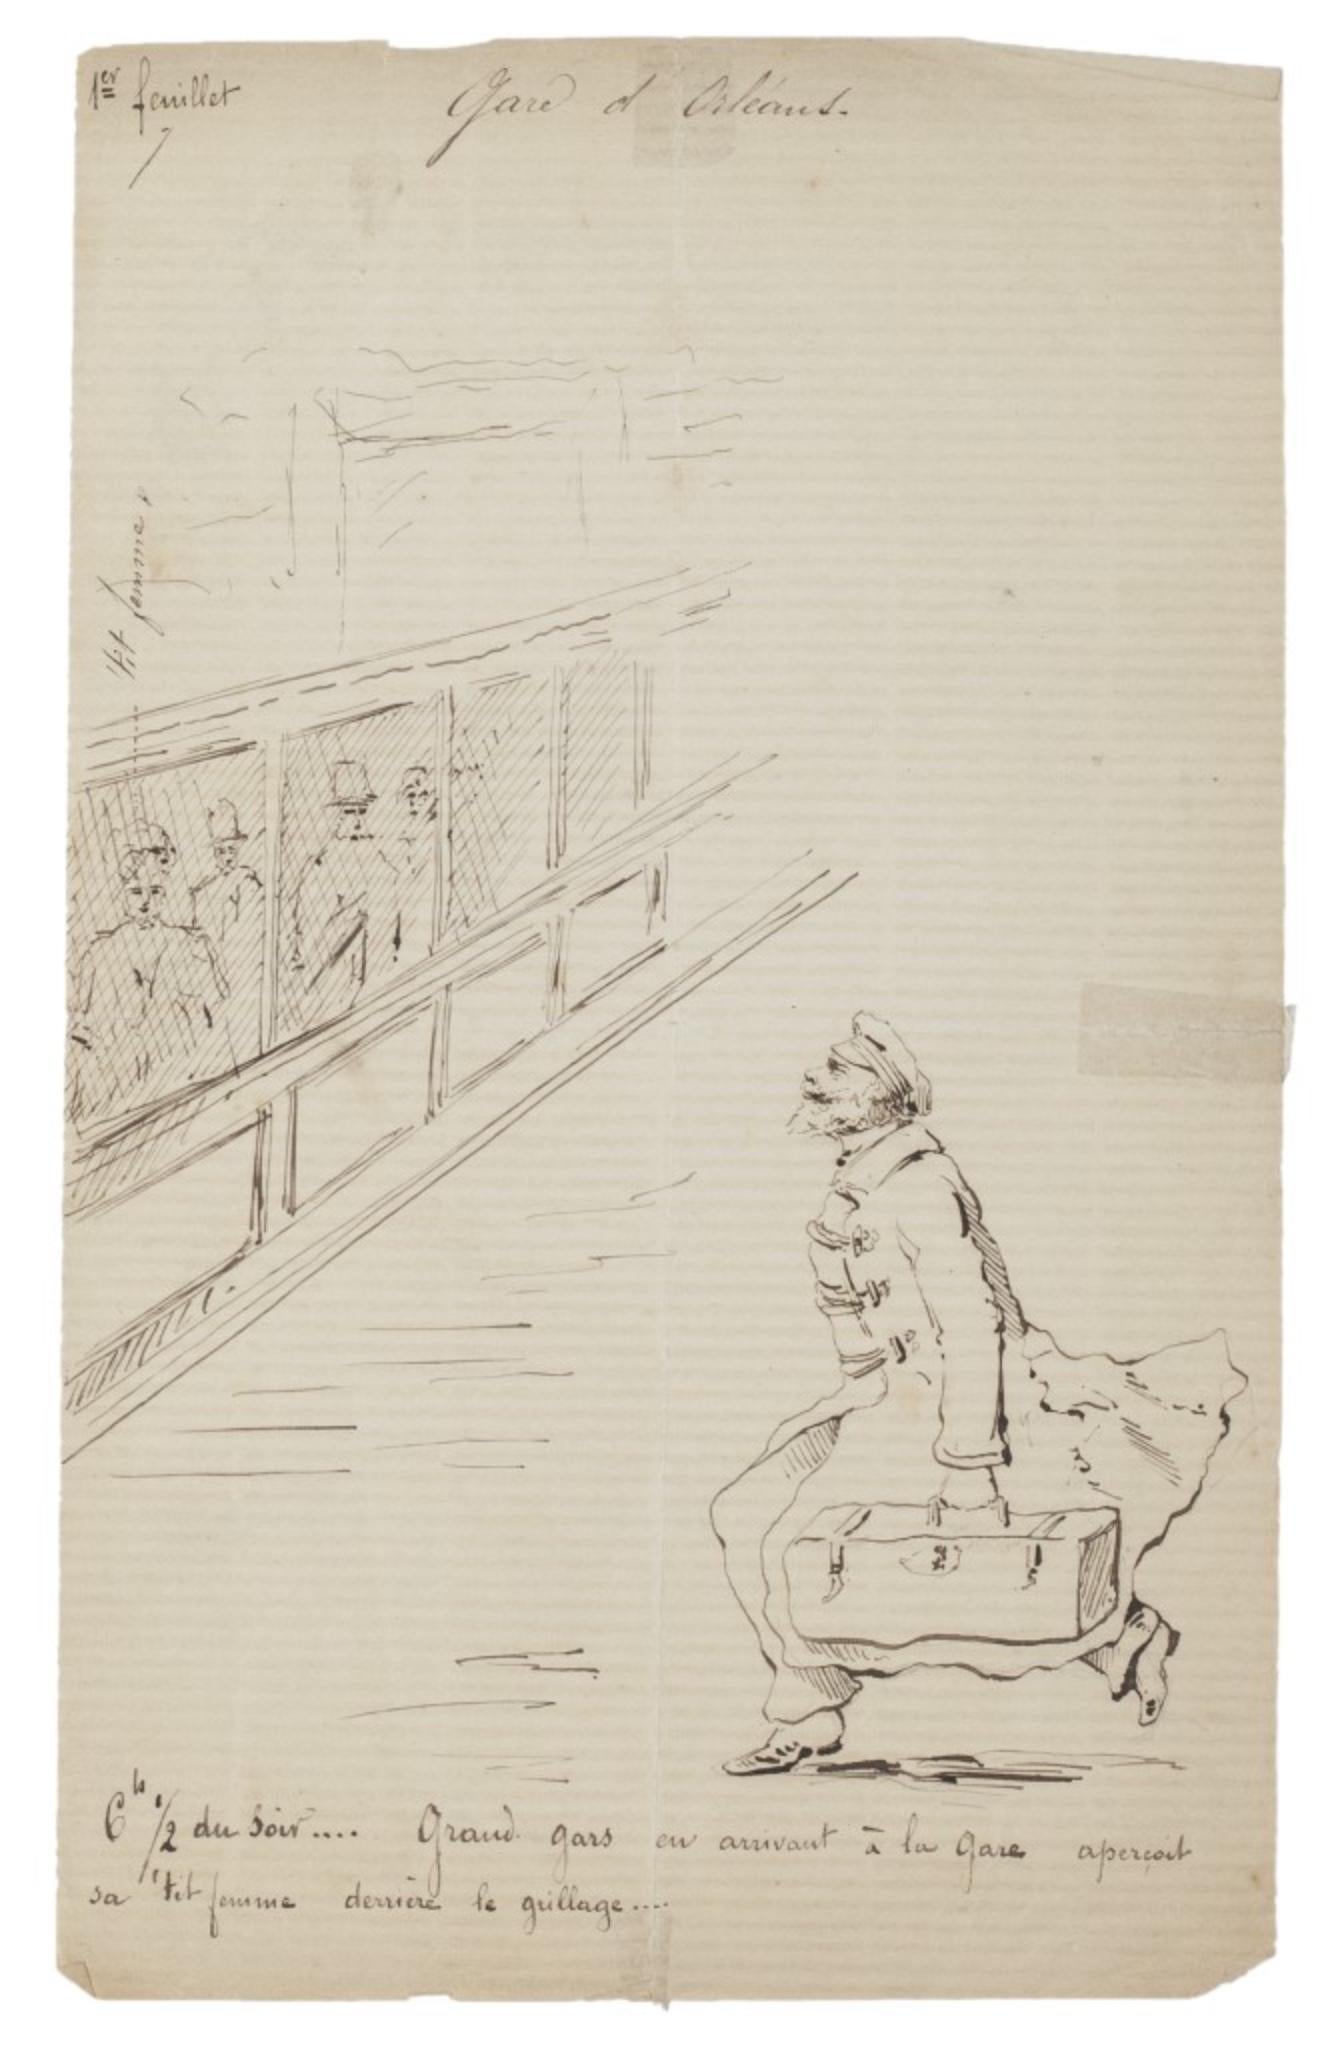 Unknown Figurative Art - La Gare d'Ostande - Original Drawing in Pen - Late 19th Century